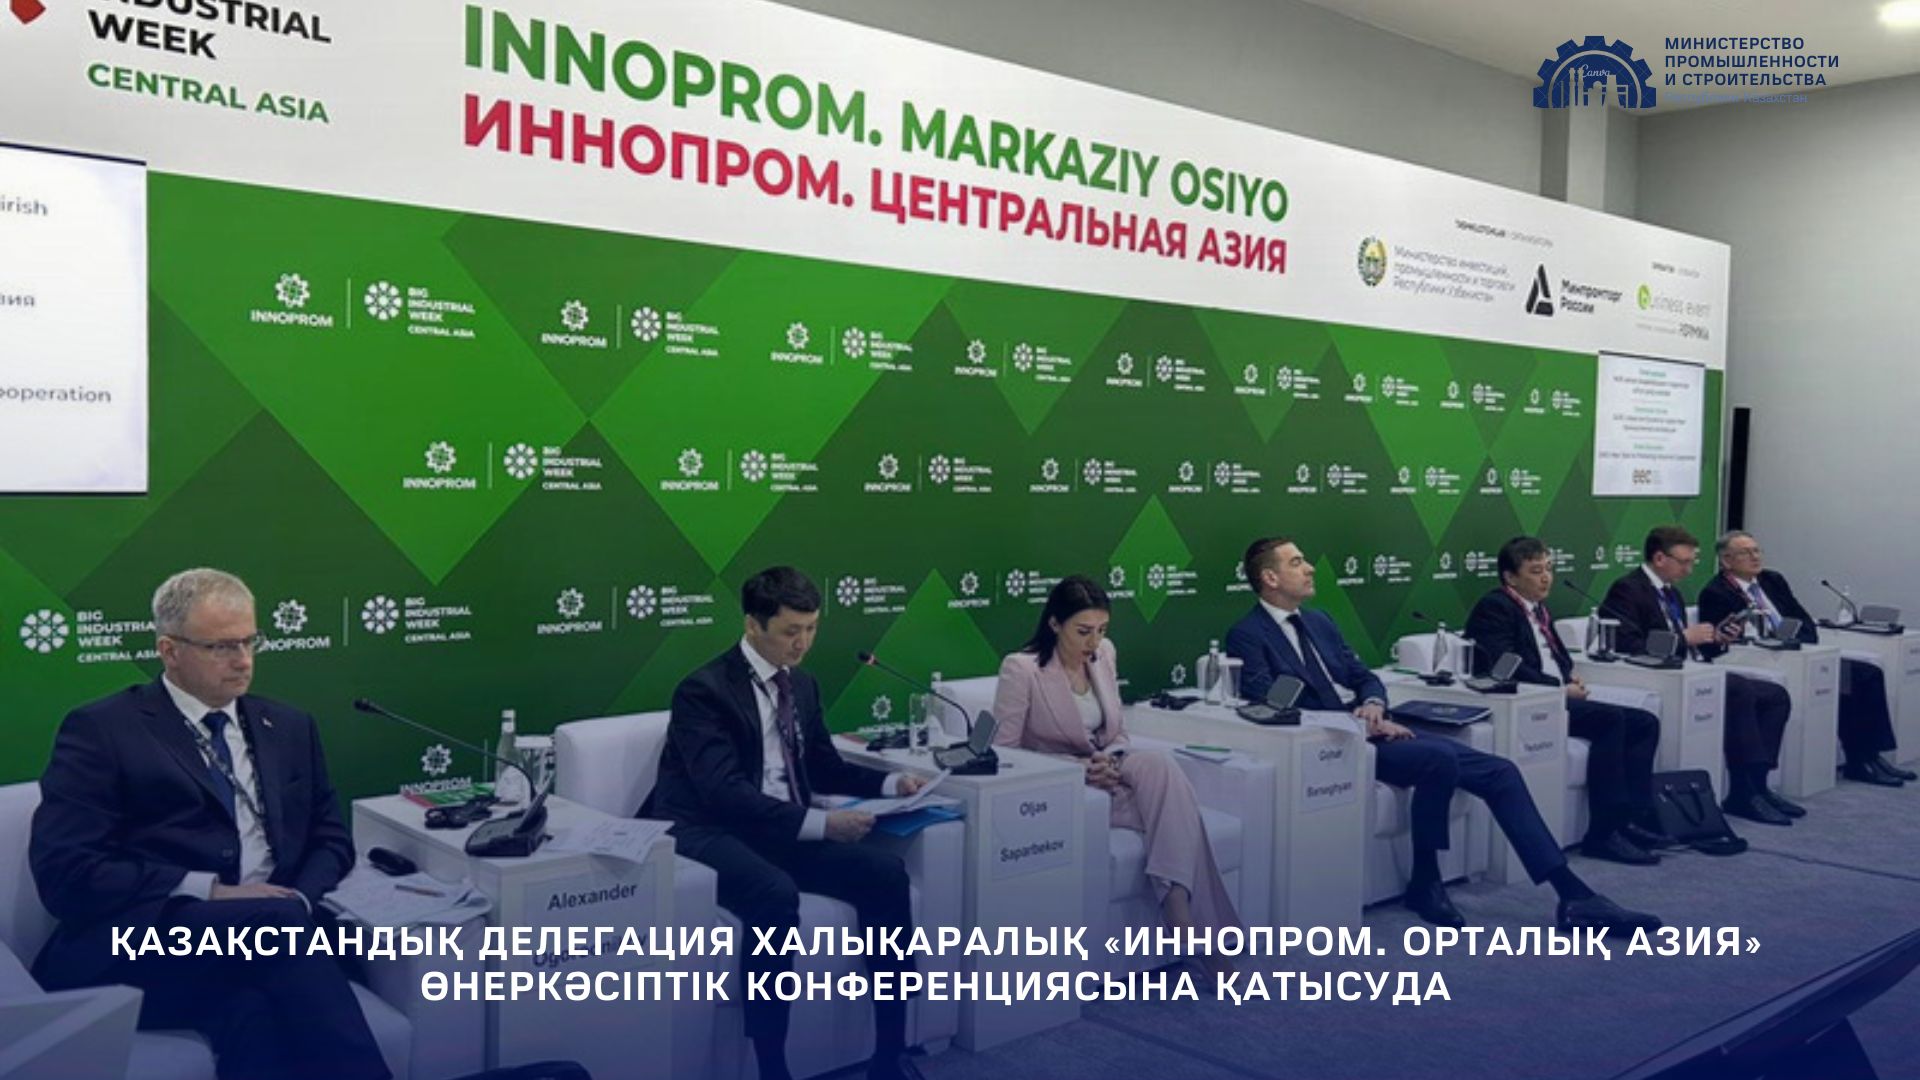 Қазақстандық делегация Халықаралық «Иннопром. Орталық Азия» өнеркәсіптік конференциясына қатысуда